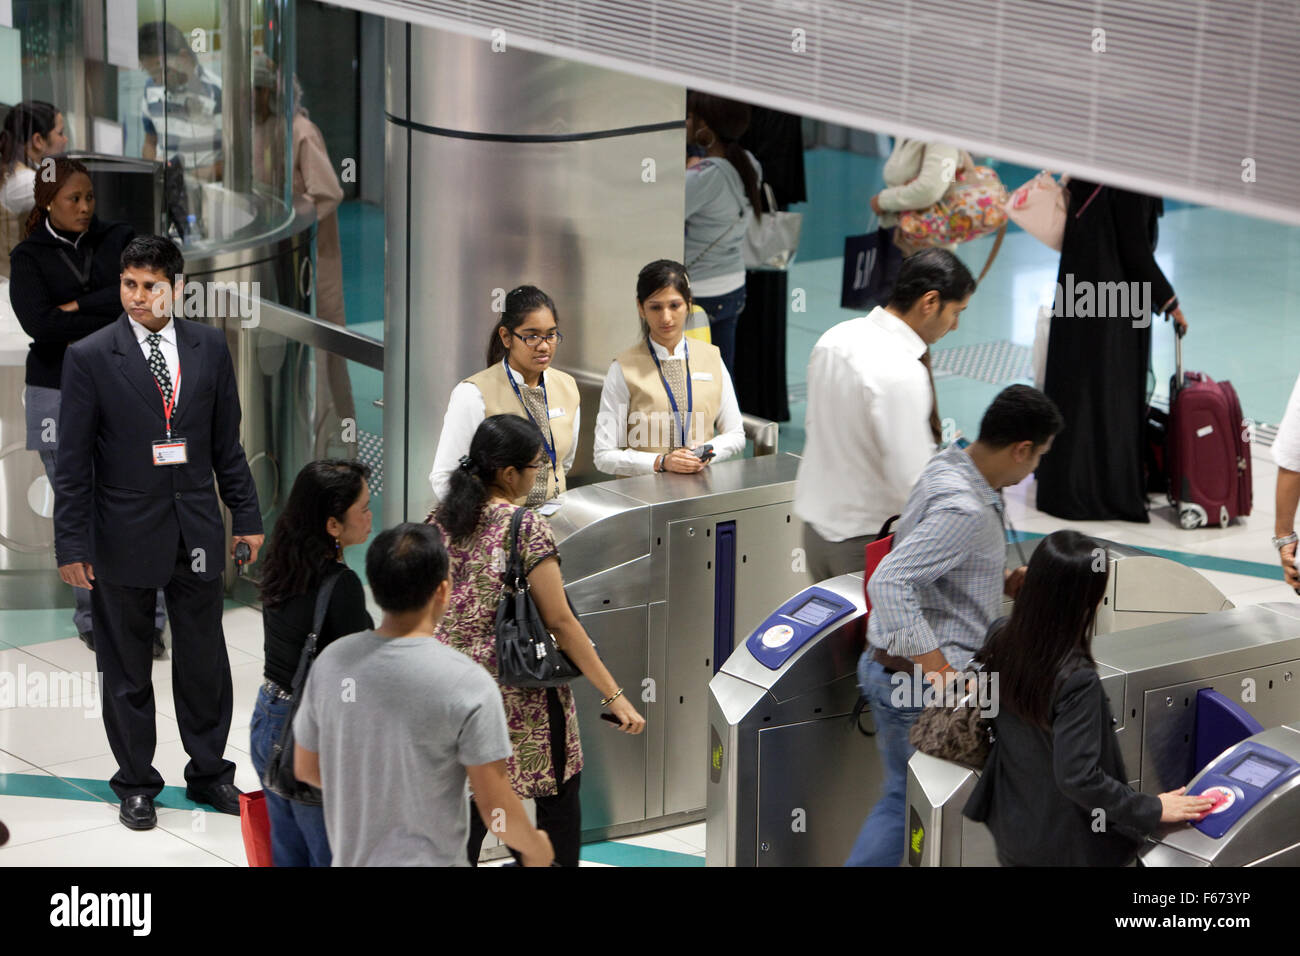 Le personnel participant à la station de métro de Dubaï au public Banque D'Images